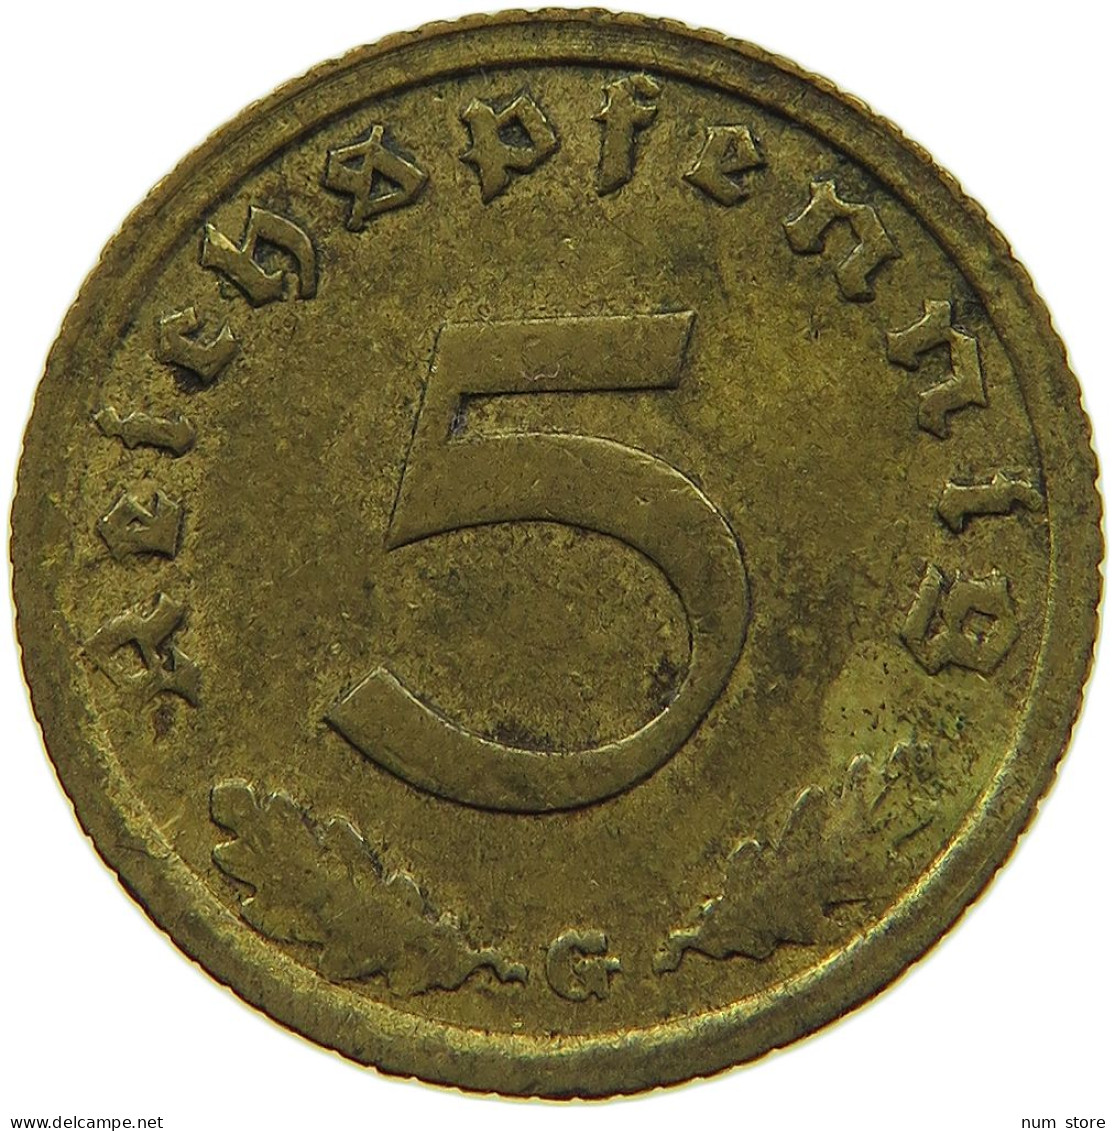 GERMANY 5 REICHSPFENNIG 1939 G #s091 0633 - 5 Reichspfennig